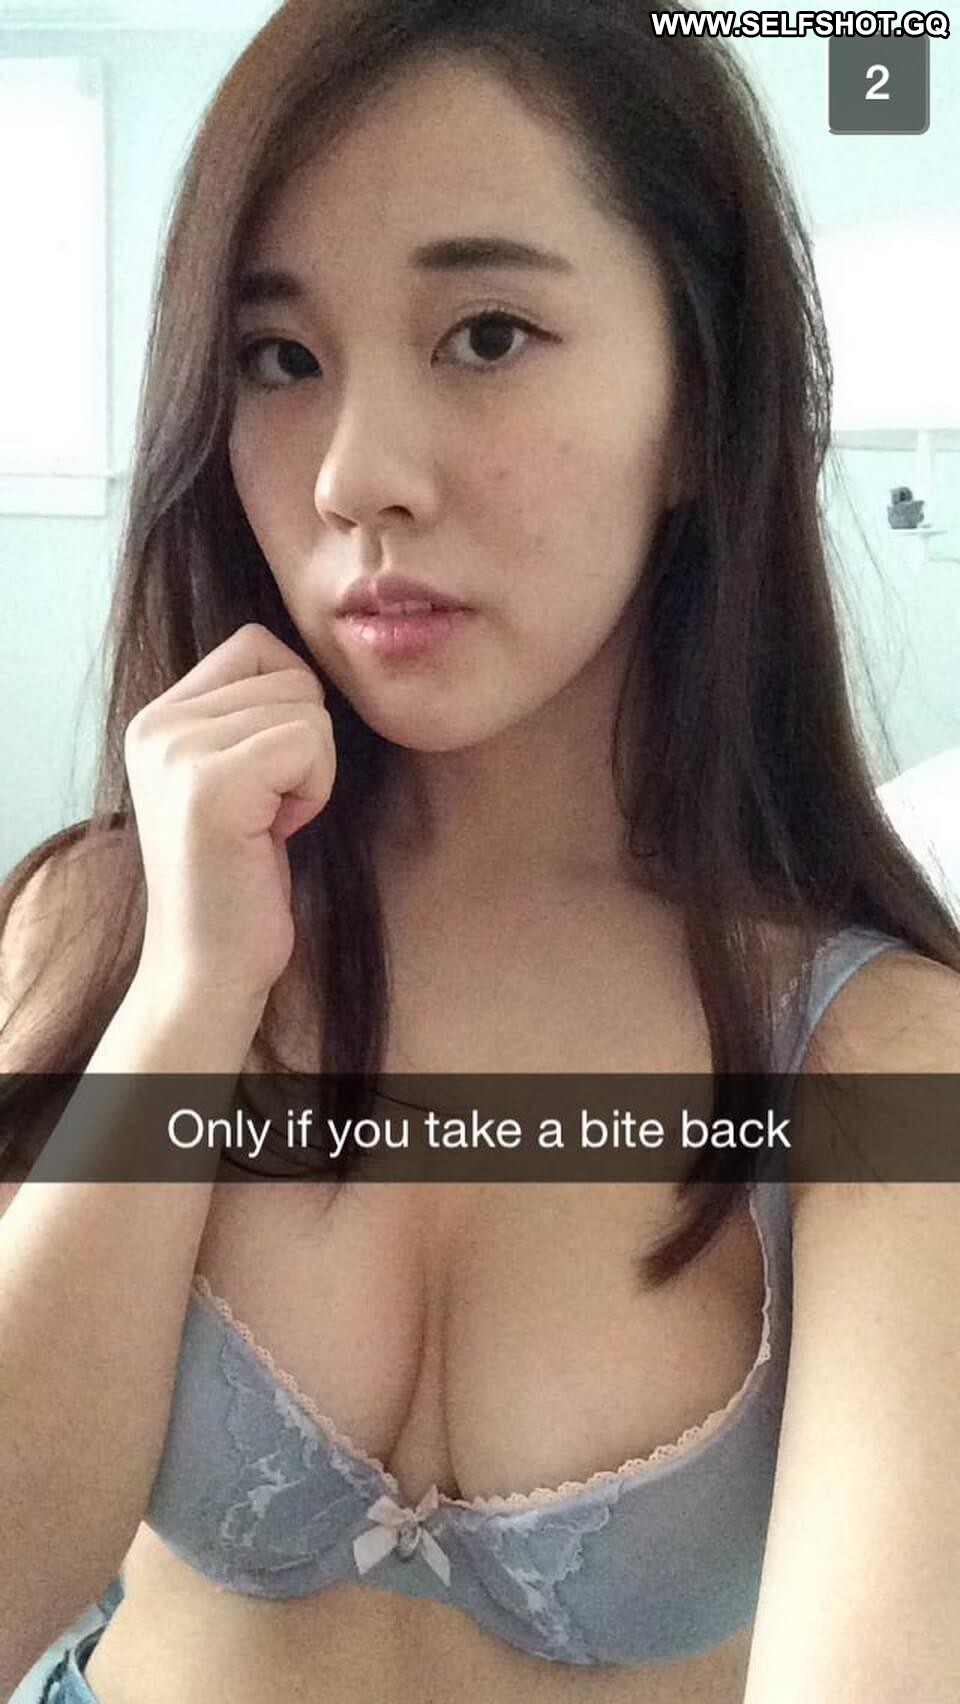 Delphia Asian Nude Sex Self Shot Xxx Girl Friend picture picture